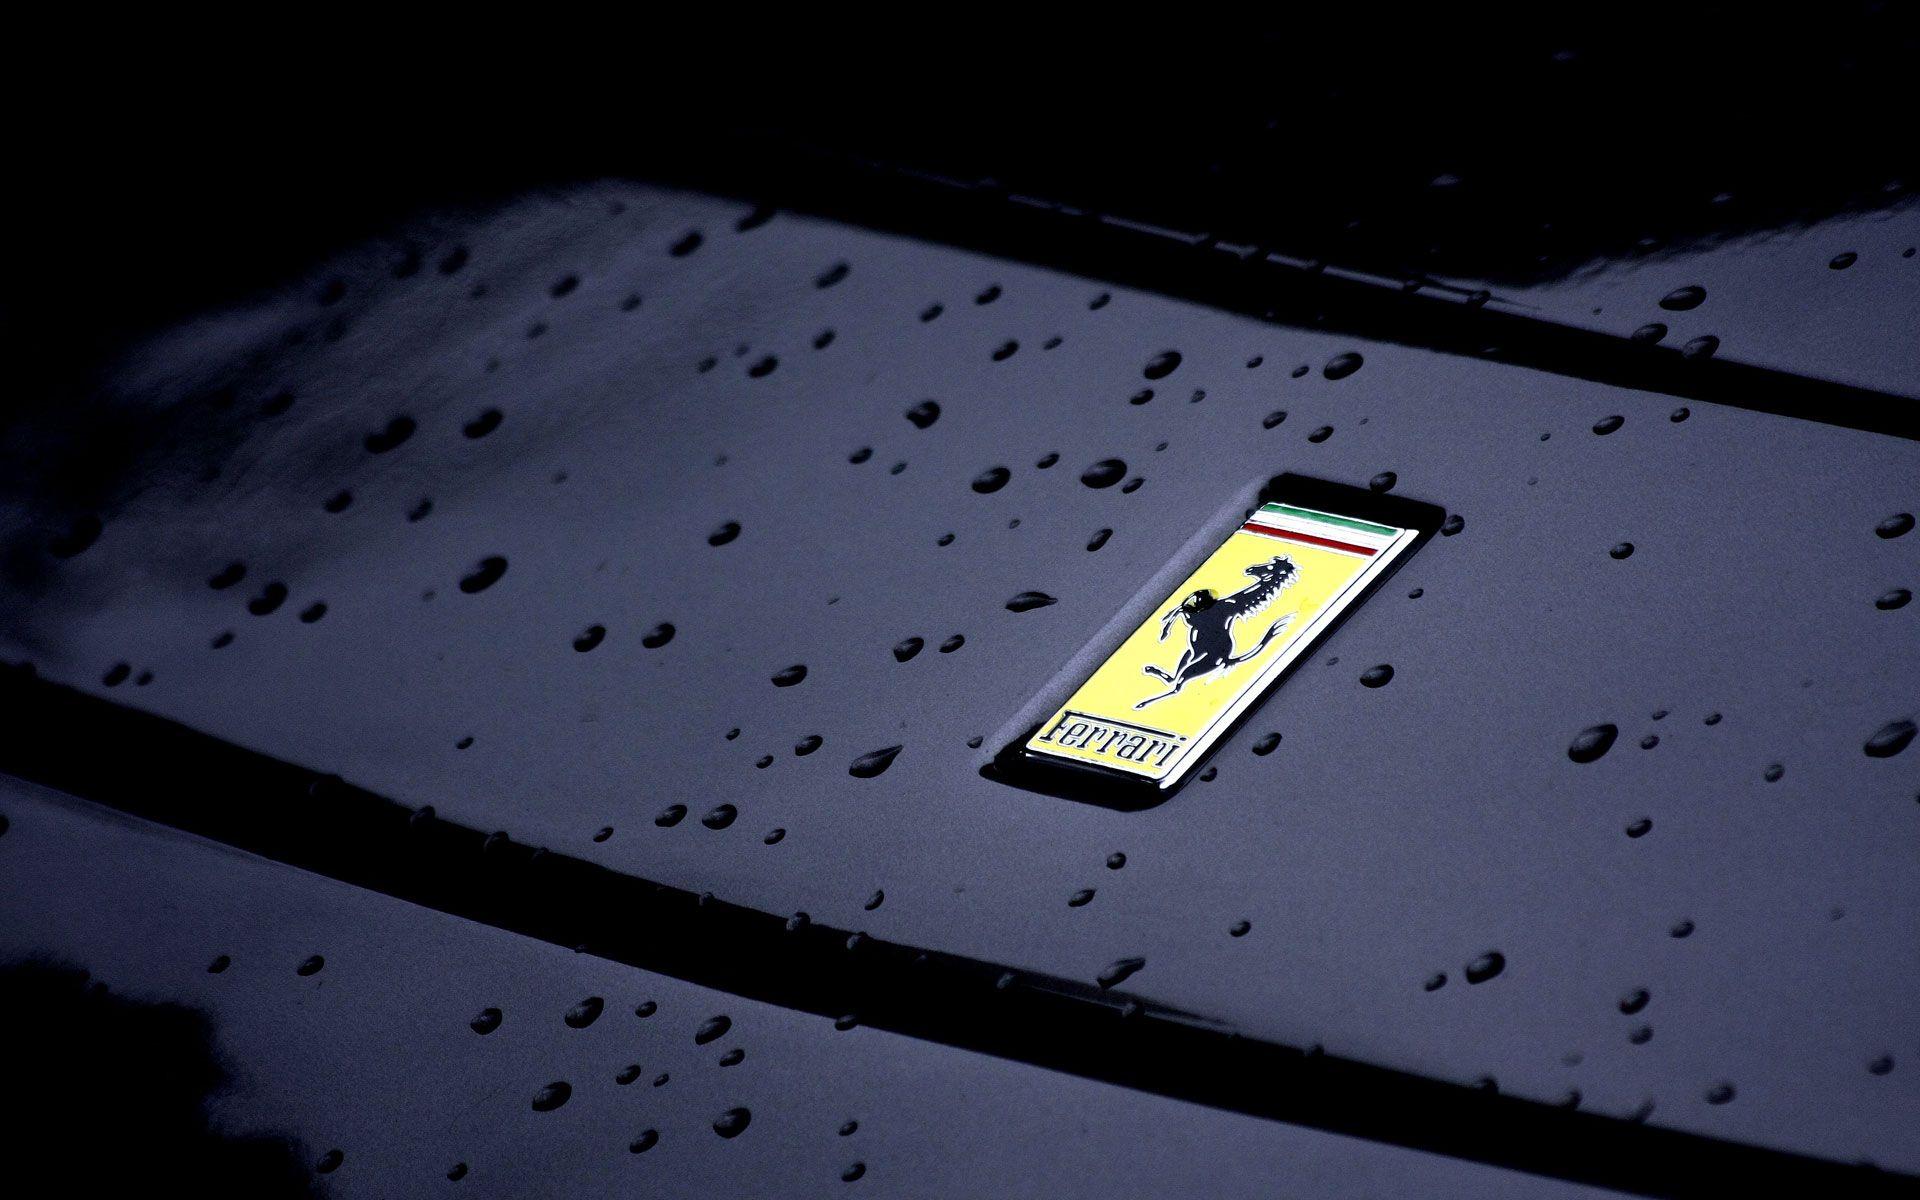 Ferrari Logo Wallpaper For Mobile